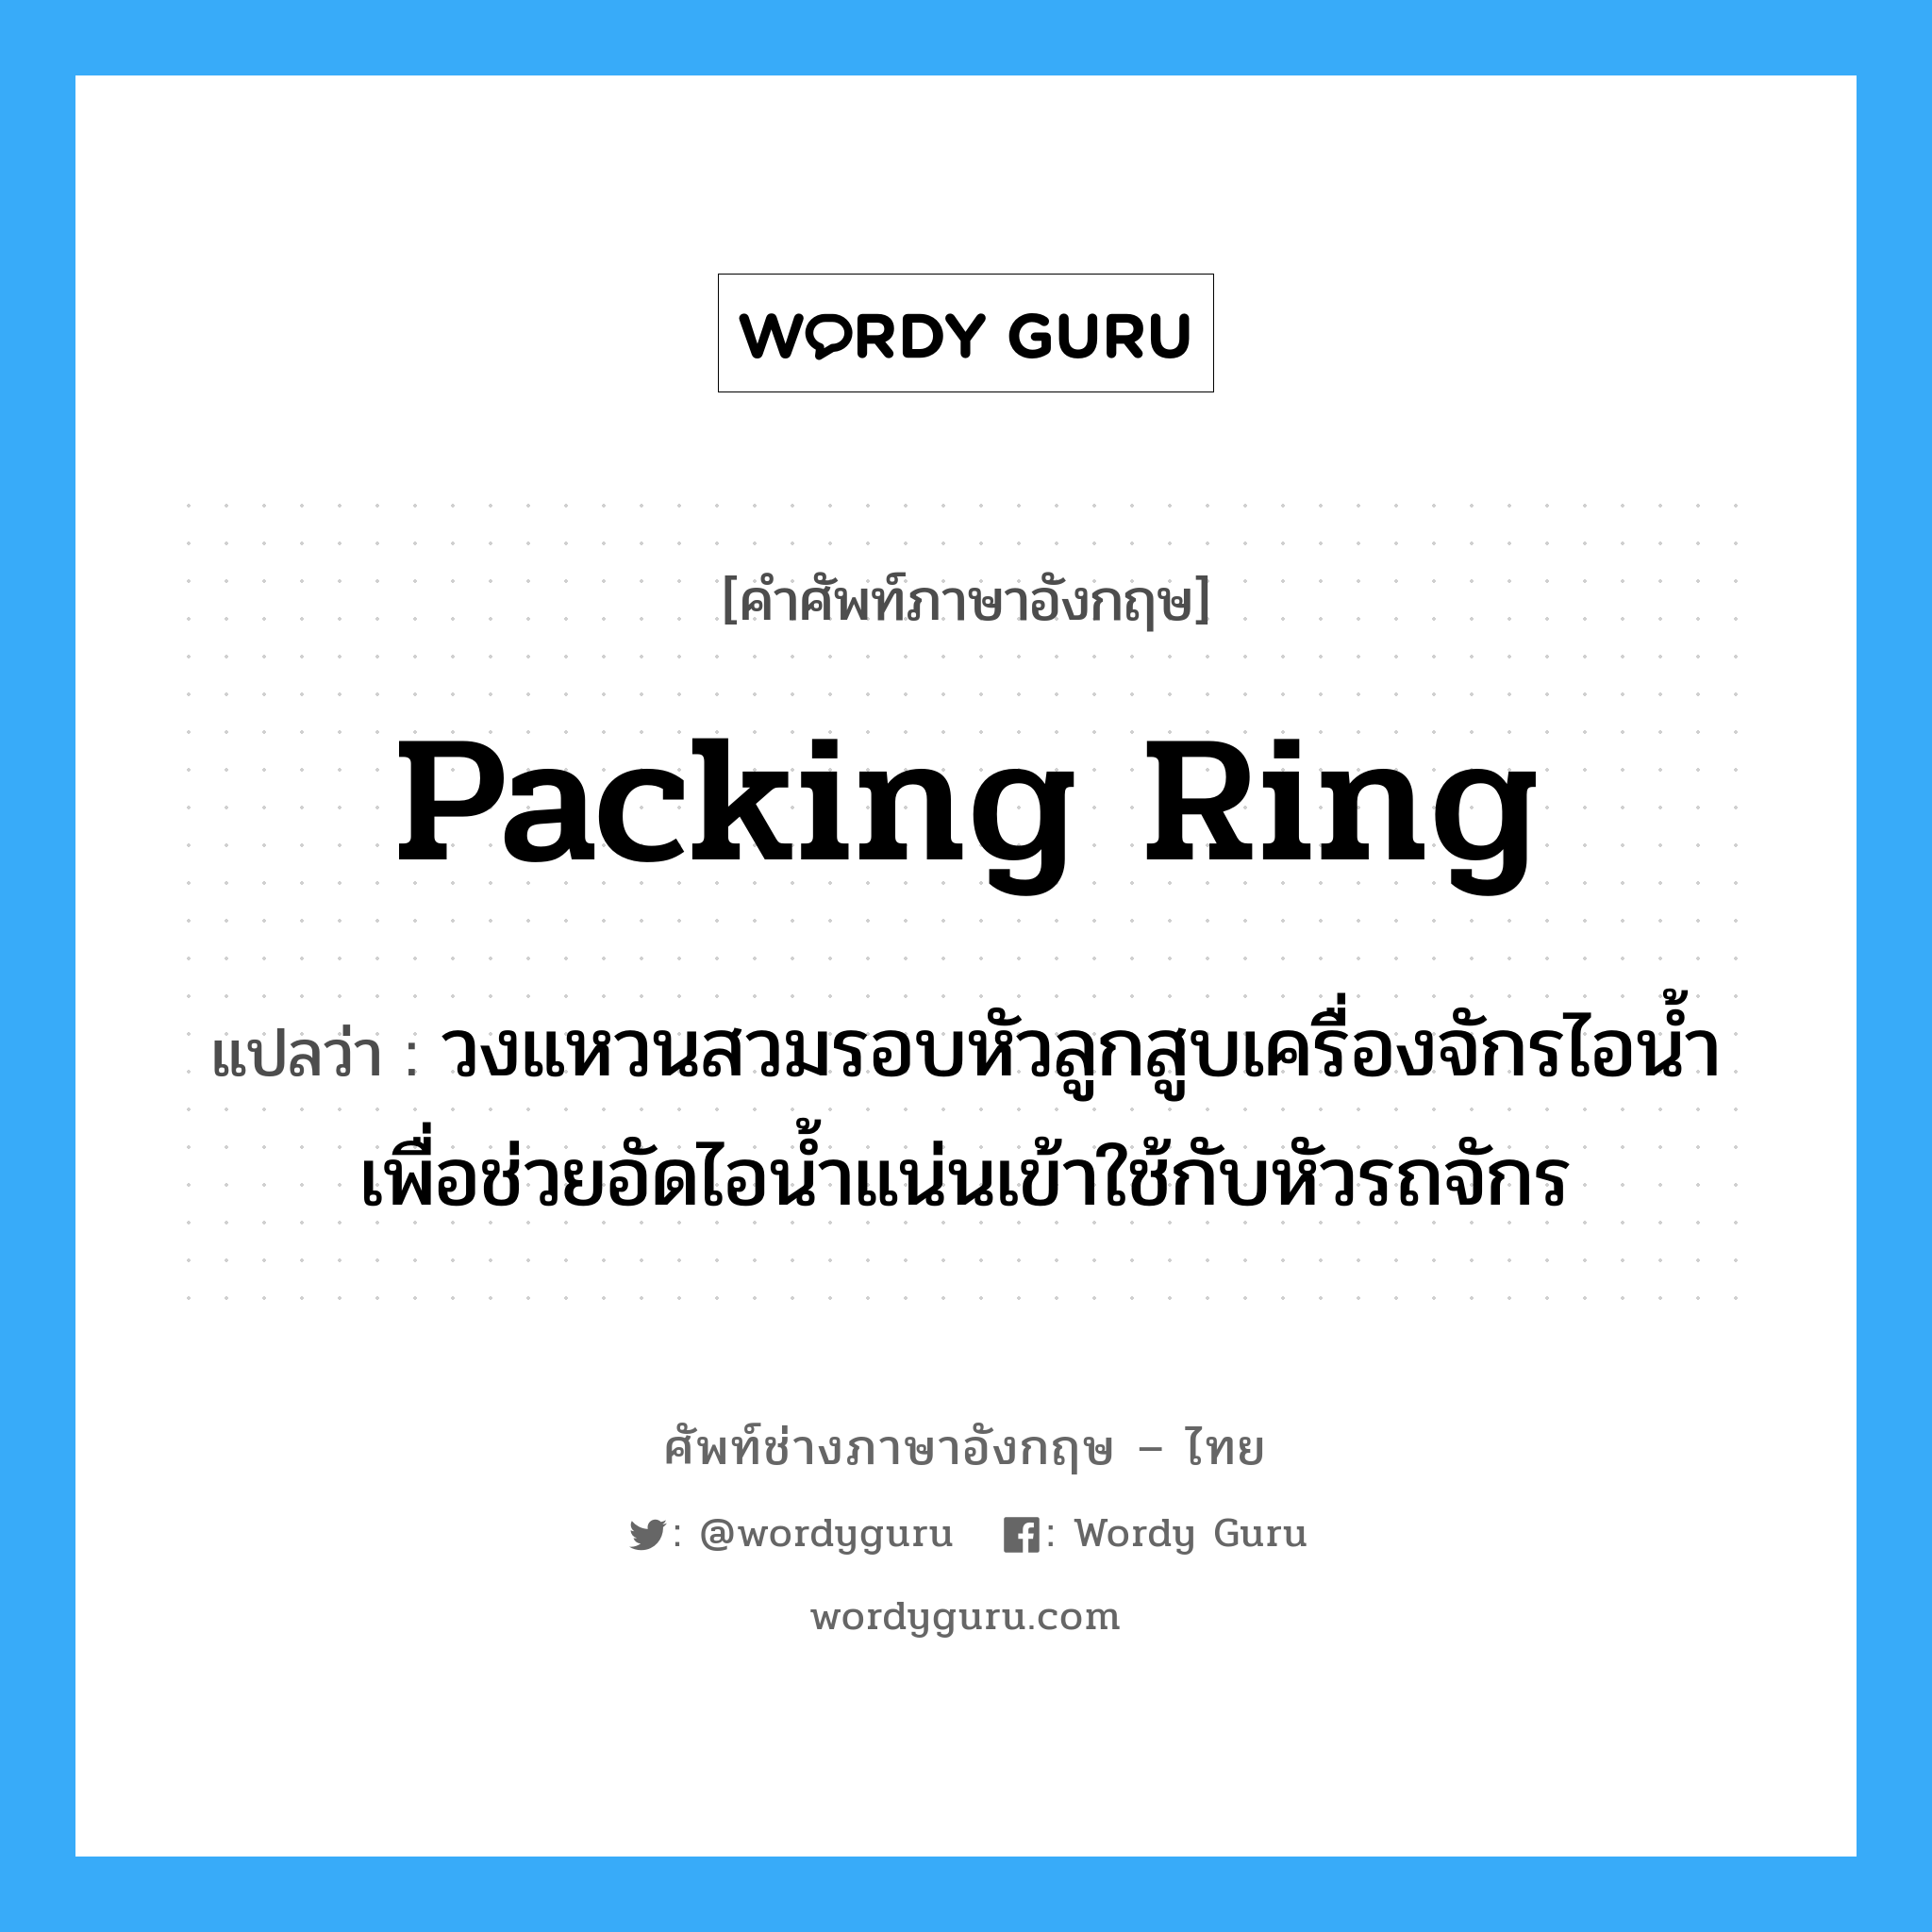 packing ring แปลว่า?, คำศัพท์ช่างภาษาอังกฤษ - ไทย packing ring คำศัพท์ภาษาอังกฤษ packing ring แปลว่า วงแหวนสวมรอบหัวลูกสูบเครื่องจักรไอน้ำ เพื่อช่วยอัดไอน้ำแน่นเข้าใช้กับหัวรถจักร